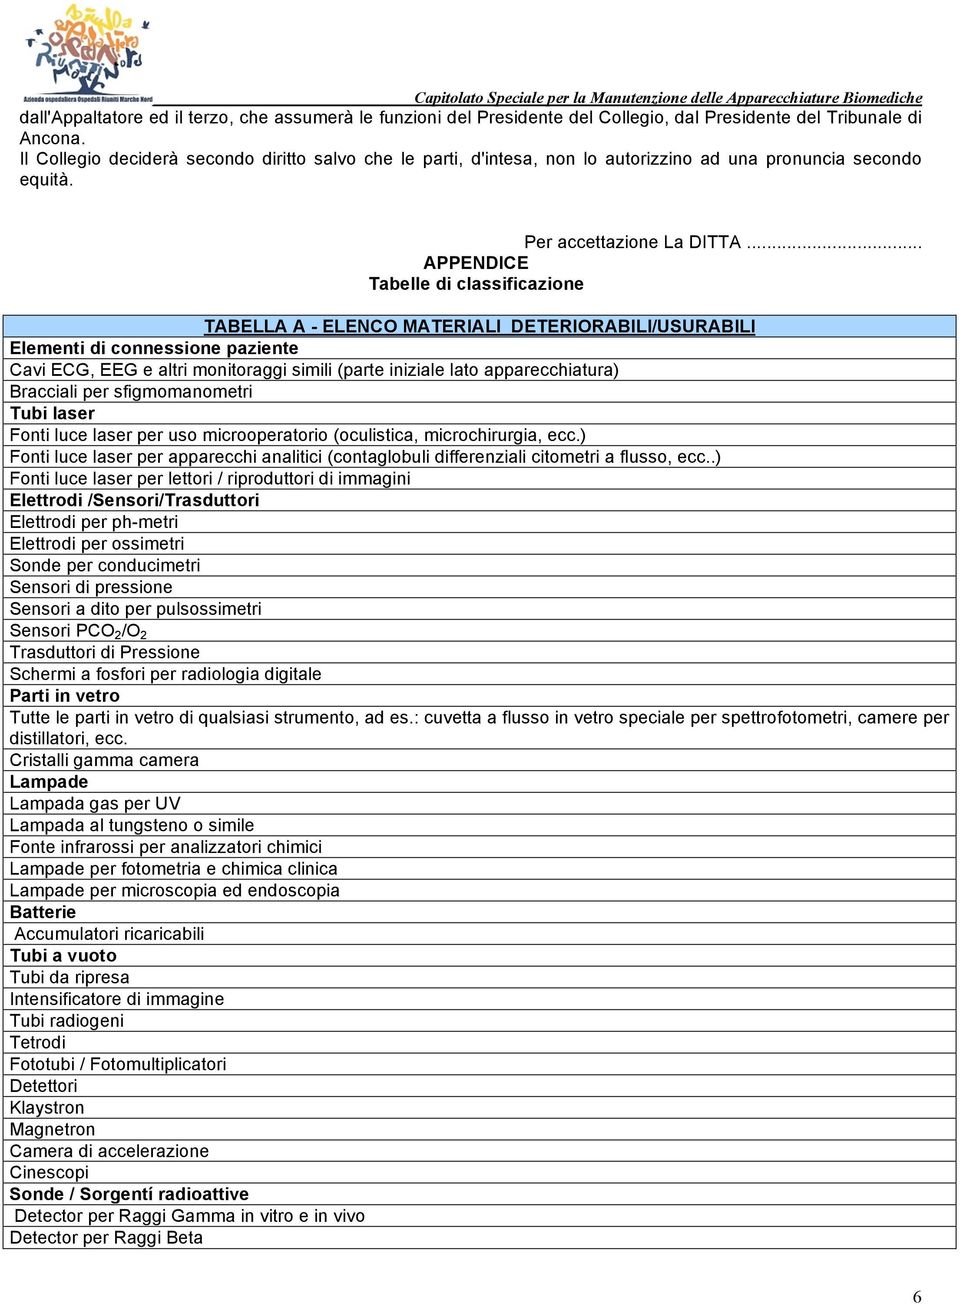 .. APPENDICE Tabelle di classificazione TABELLA A - ELENCO MATERIALI DETERIORABILI/USURABILI Elementi di connessione paziente Cavi ECG, EEG e altri monitoraggi simili (parte iniziale lato